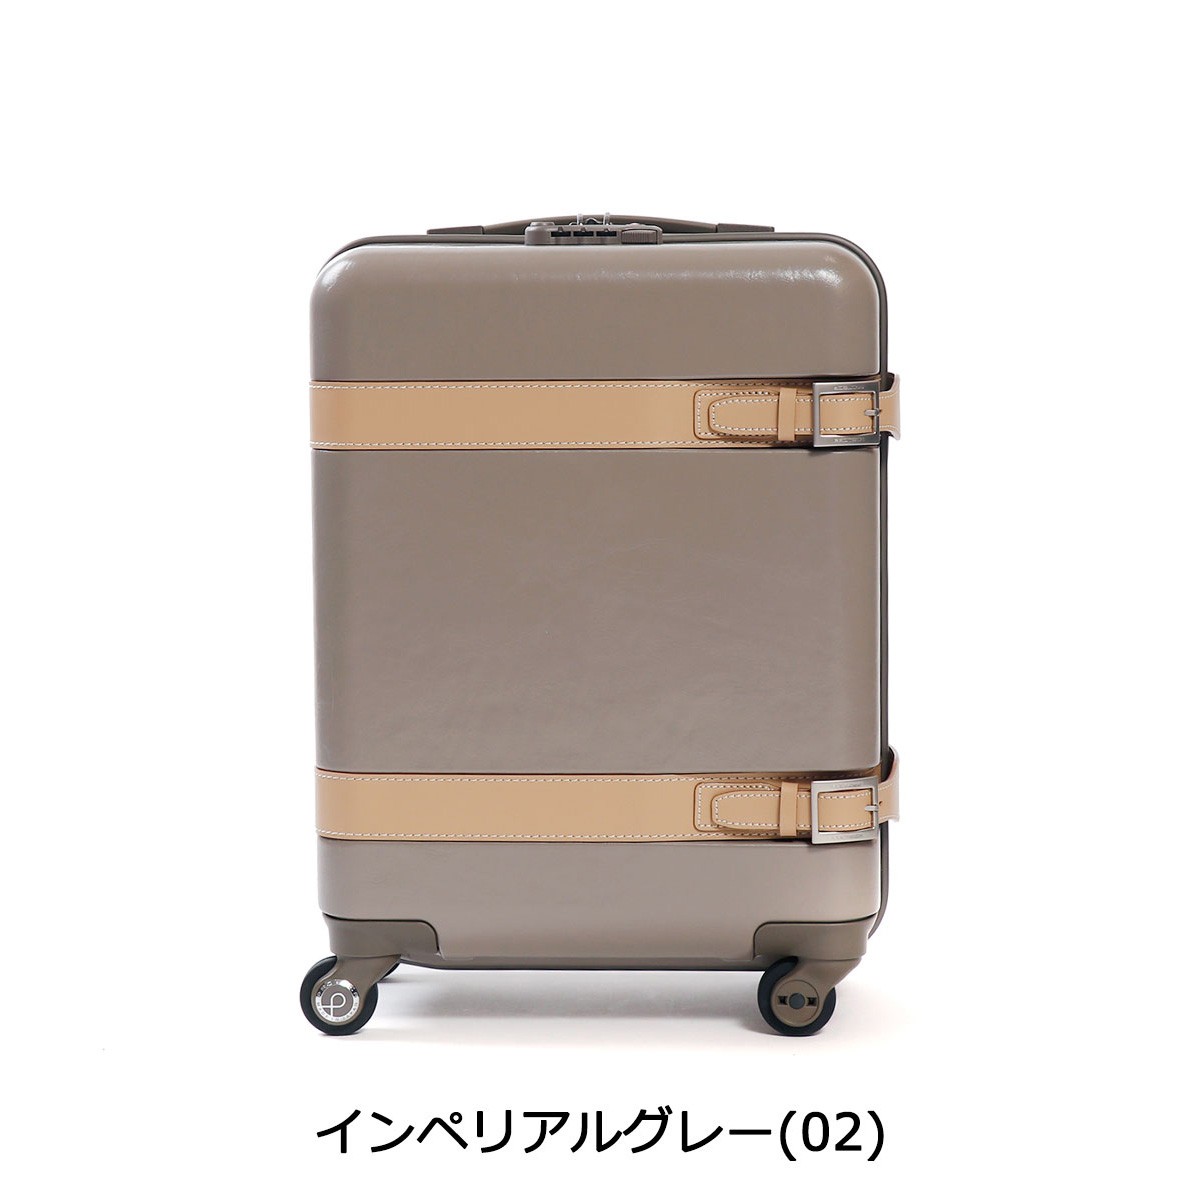 超歓迎された】 プロテカ スーツケース 日本製 ジーニオ センチュリーs